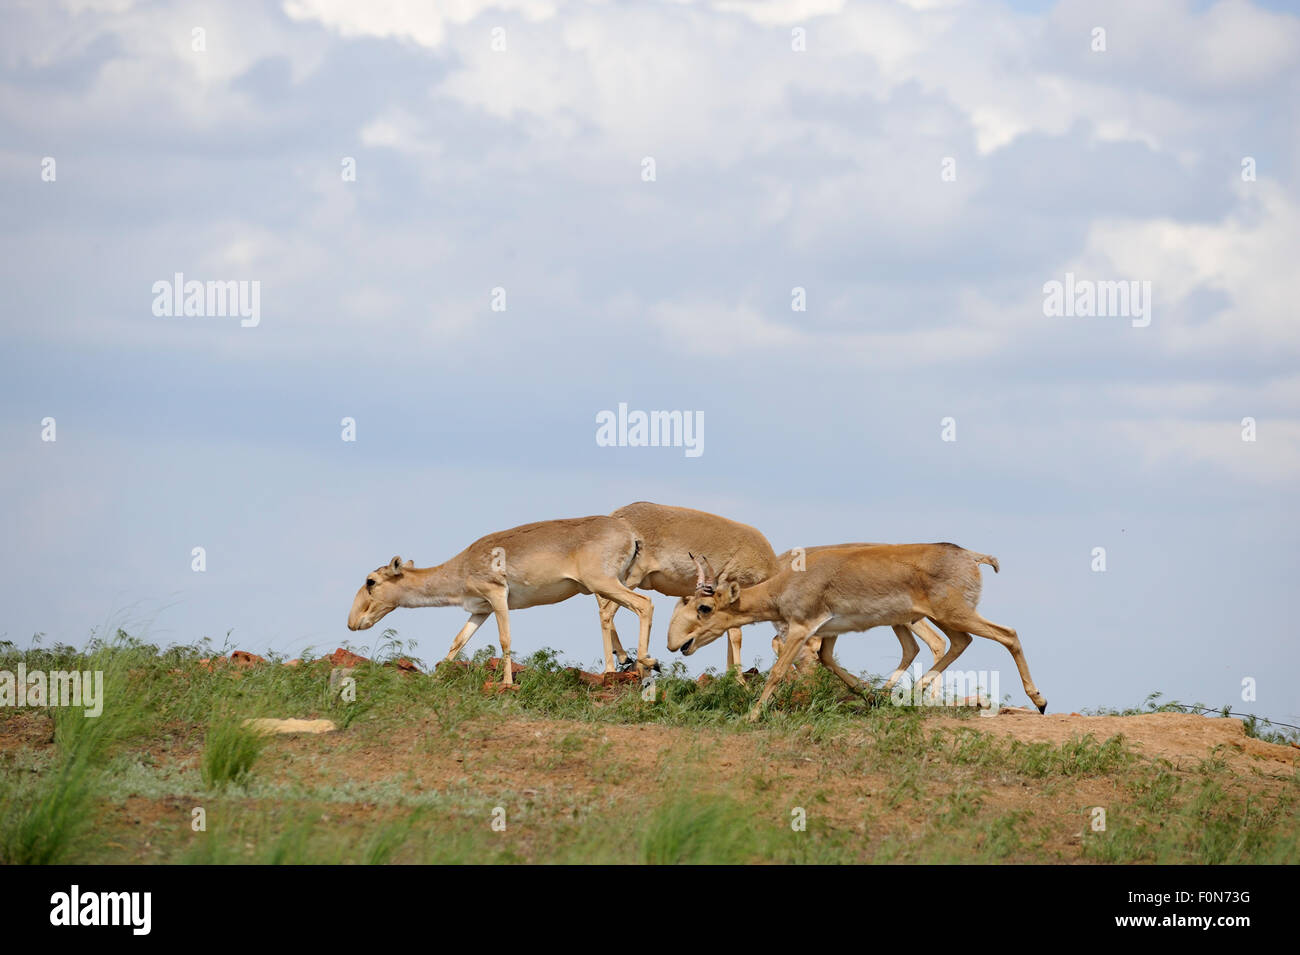 Les antilopes saïga (Saiga tatarica) Cherniye zemli (terre noire), Réserve naturelle de Kalmoukie, en Russie, en mai 2009 Banque D'Images